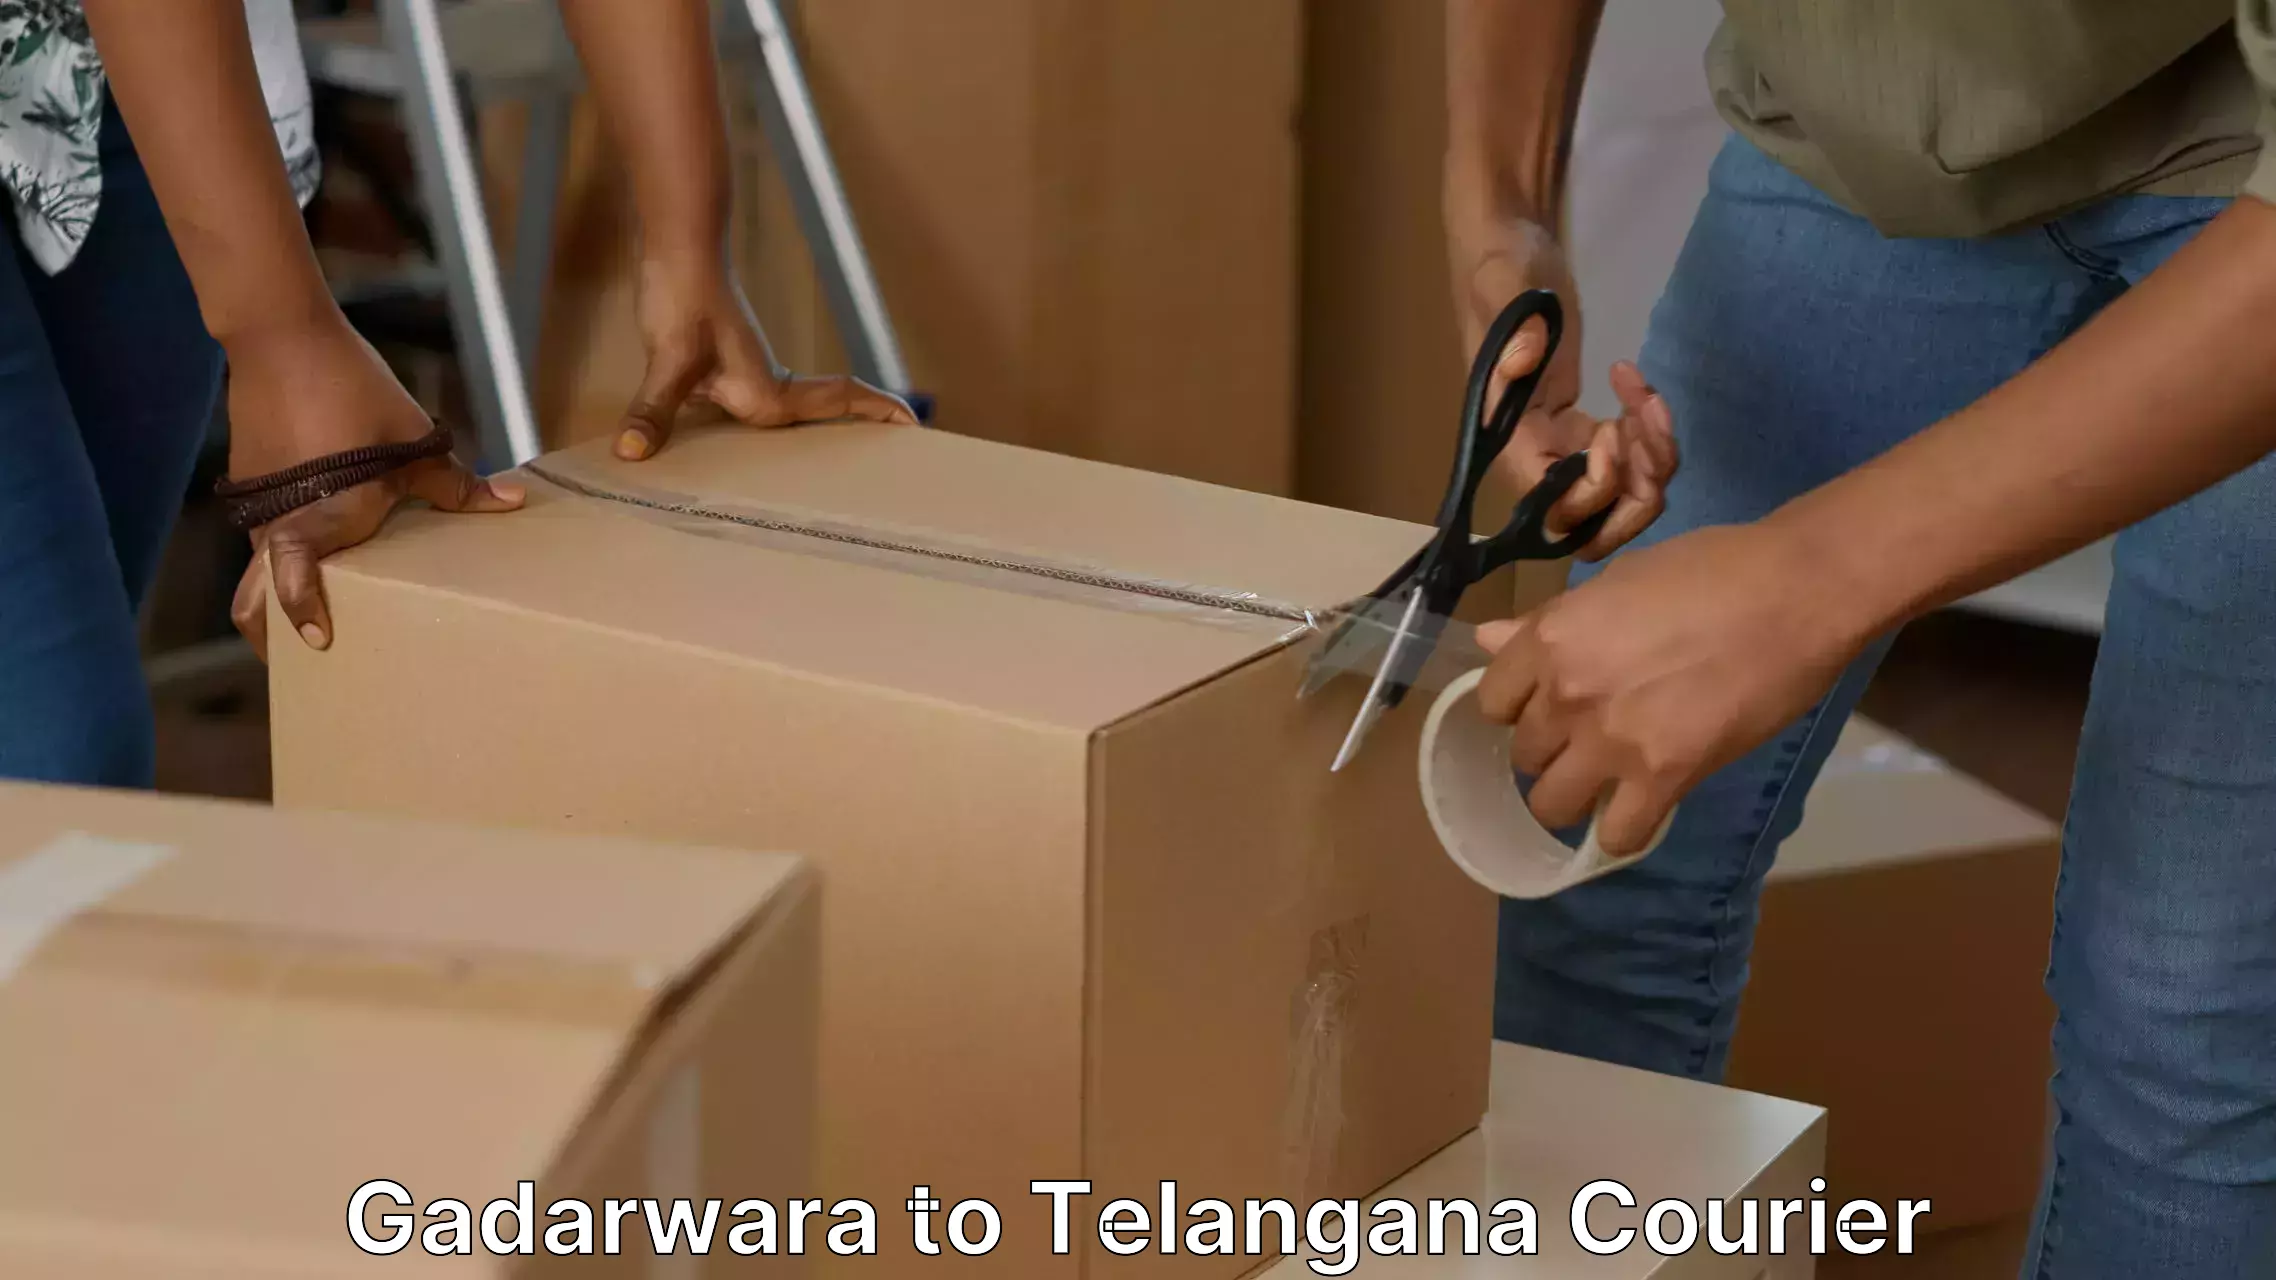 Professional packing services Gadarwara to Telangana